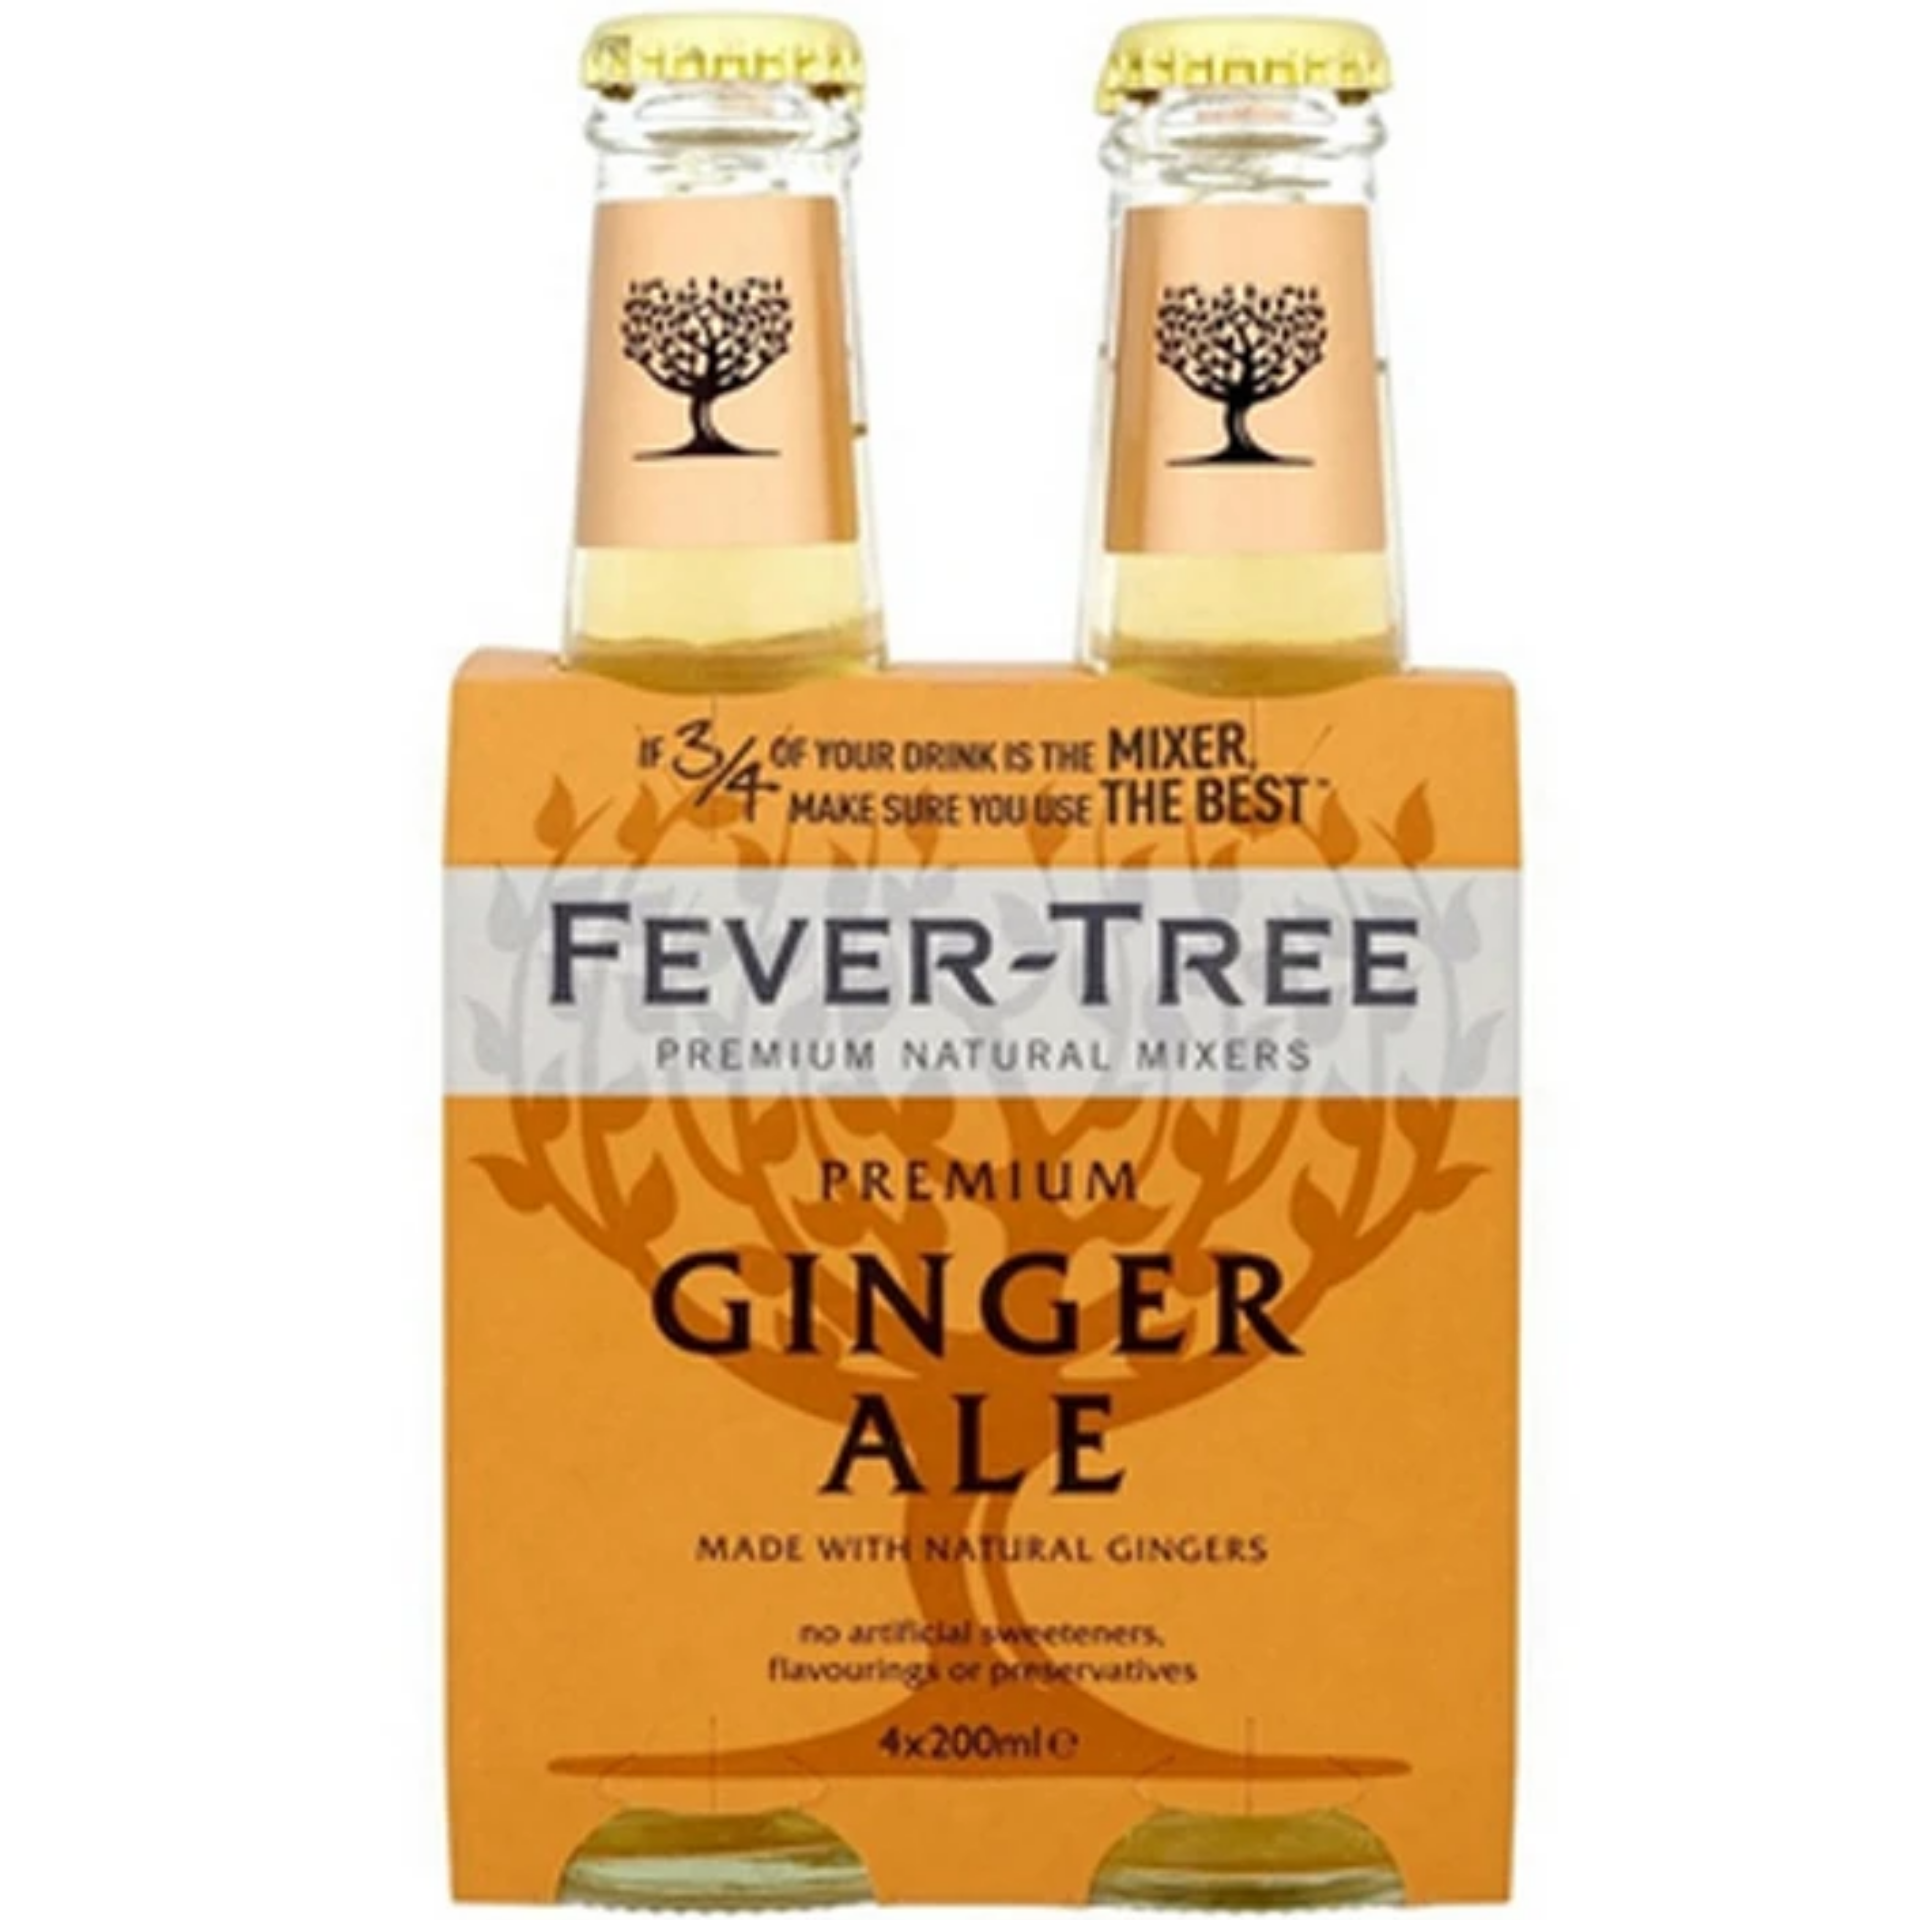 Fever Tree Premium Ginger Ale (200ml x 4 bottles)